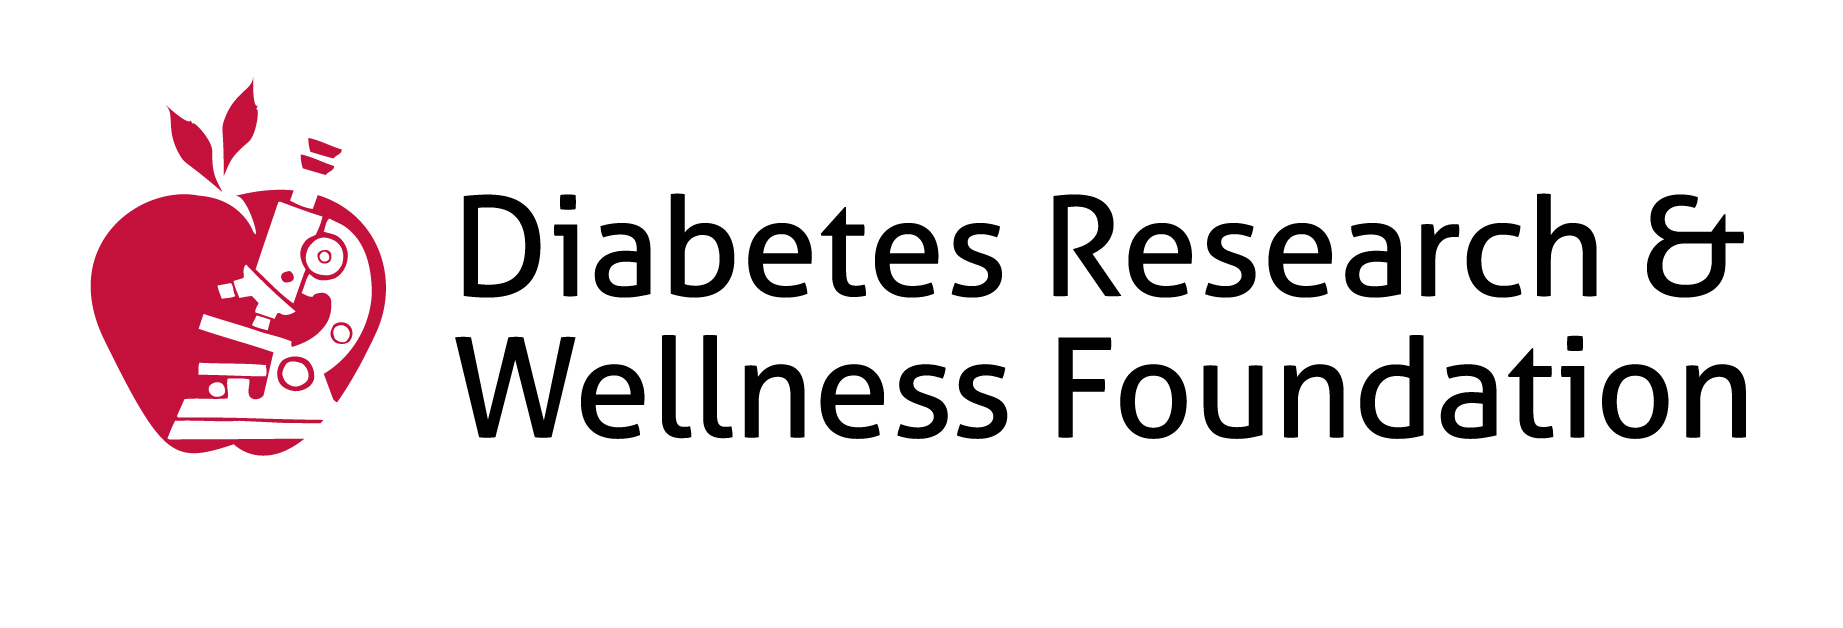 diabetes research and wellness foundation charity rating új cukorbetegség kezelési technikák